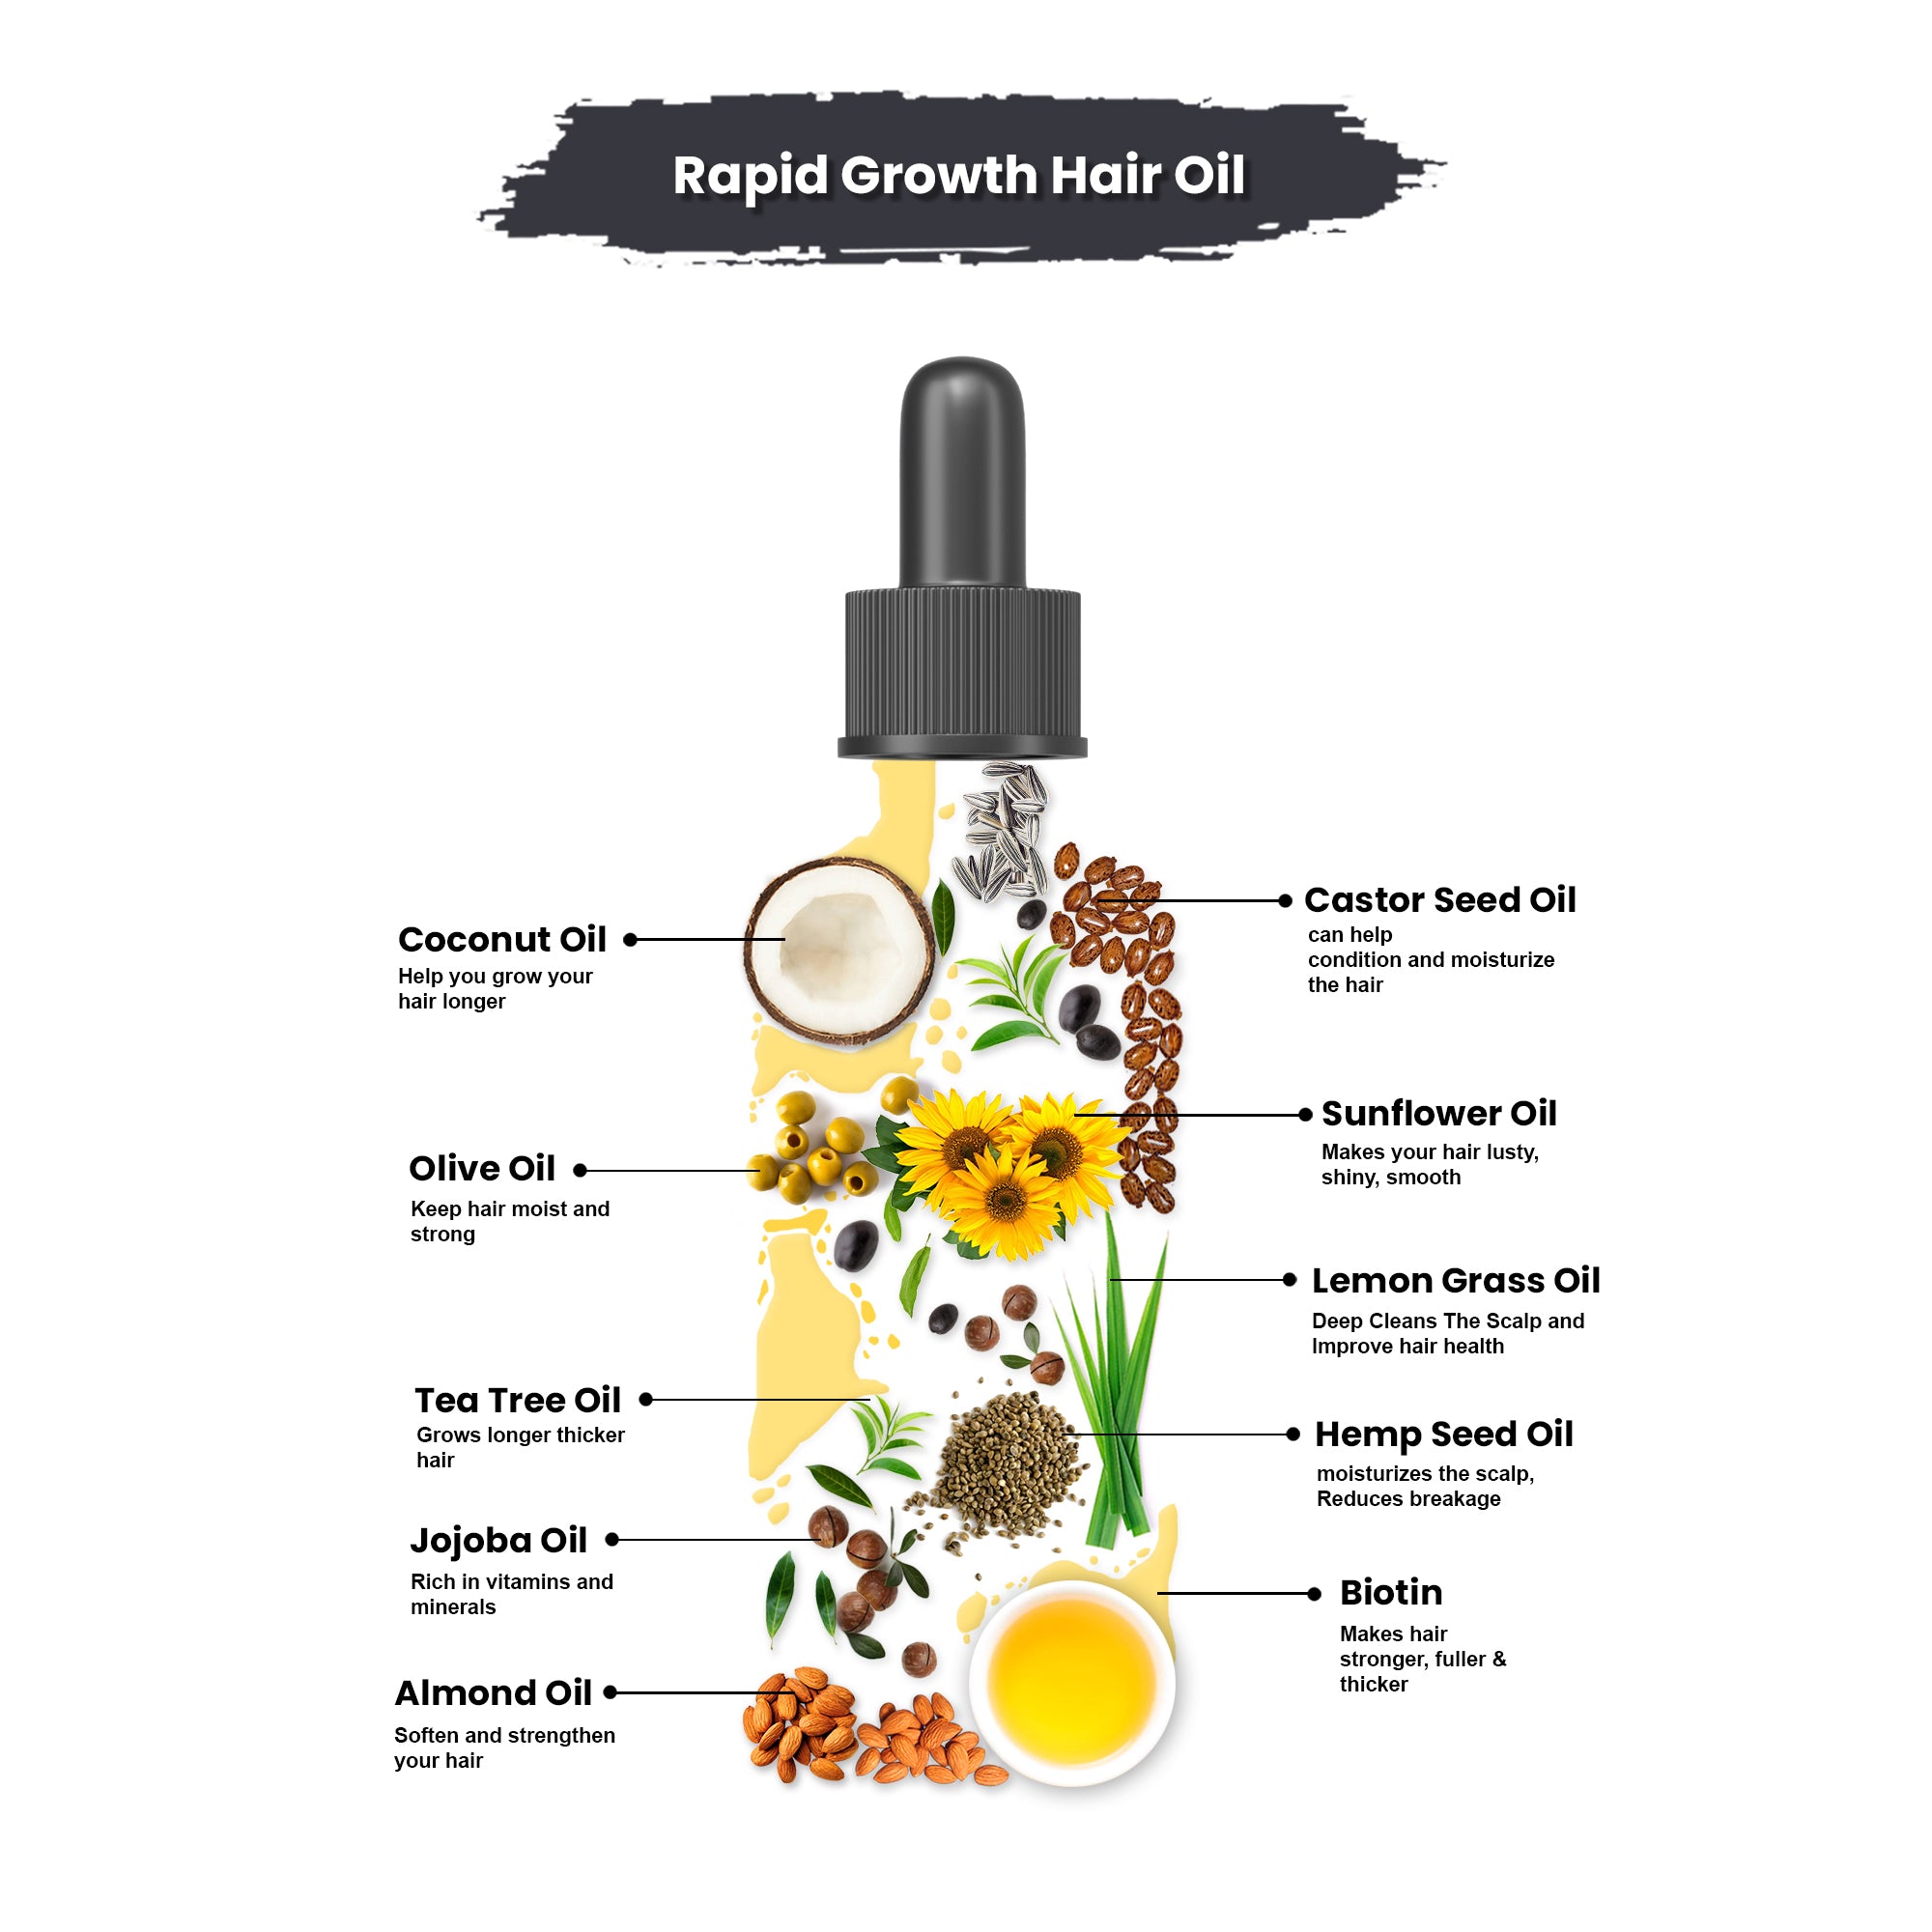 RAPID GROWTH HAIR OIL